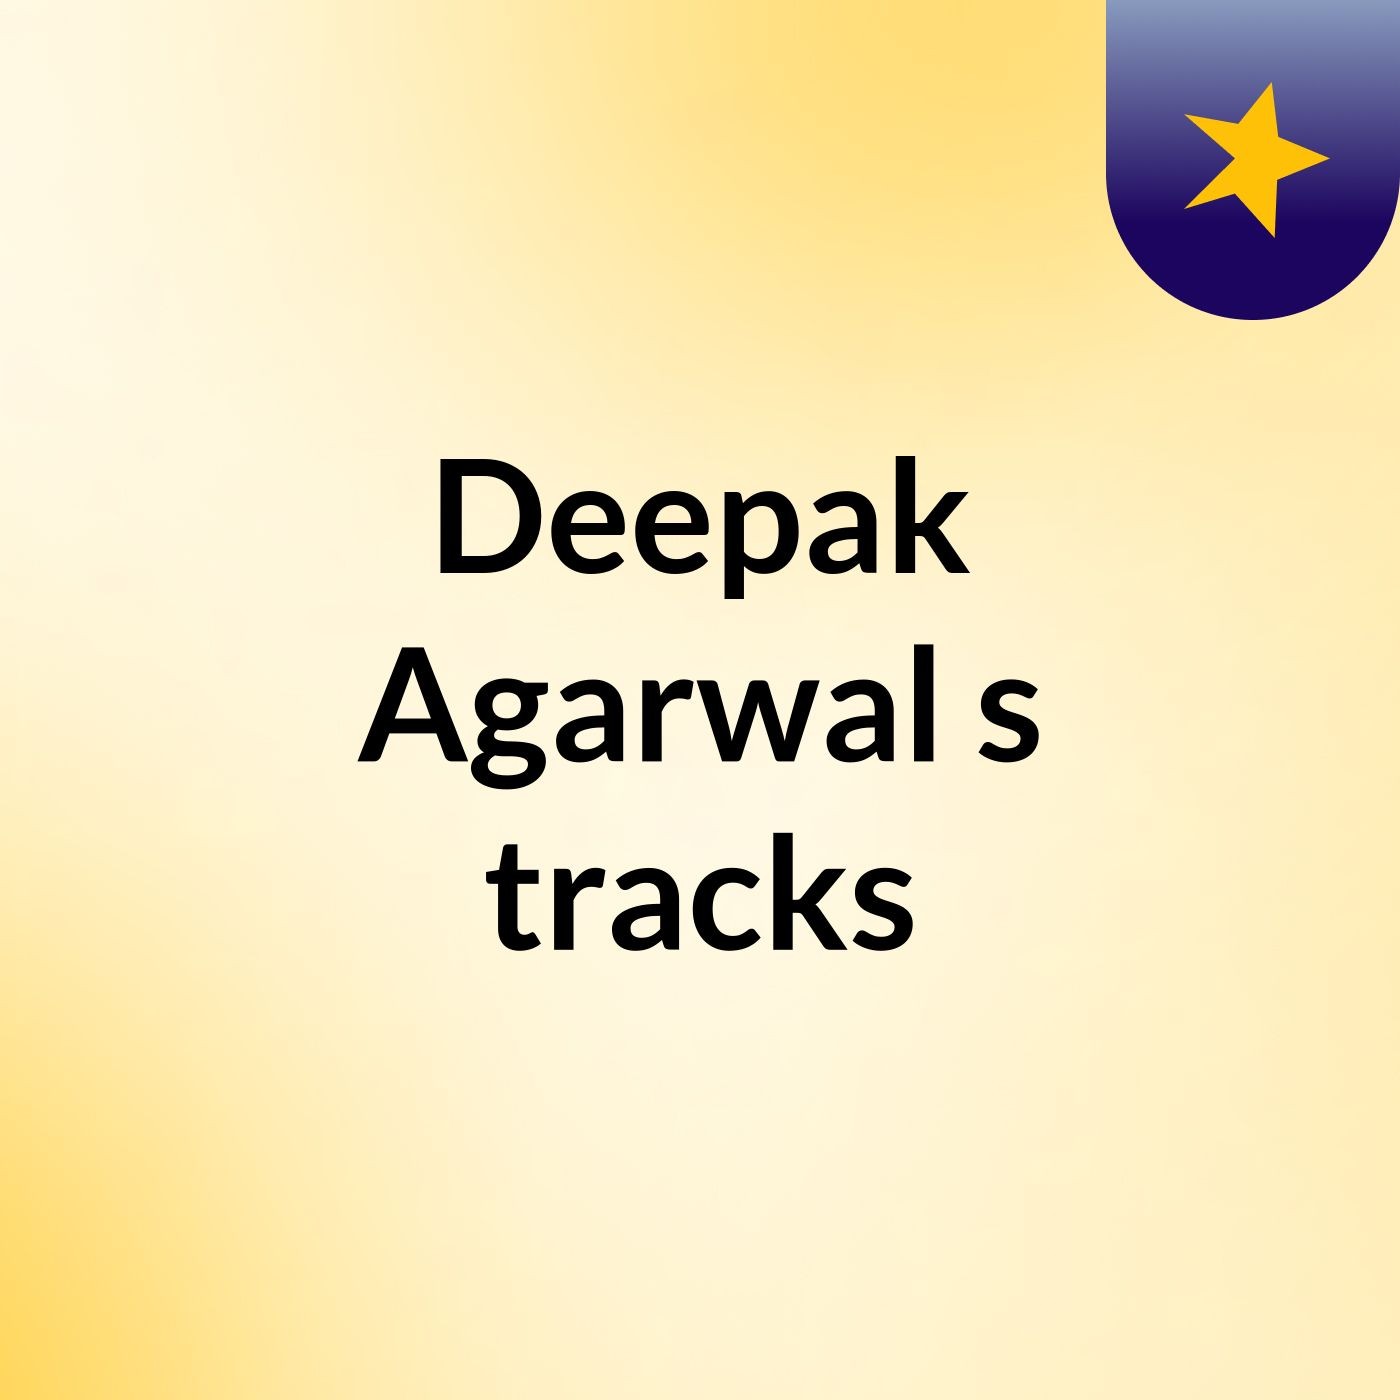 Deepak Agarwal's tracks